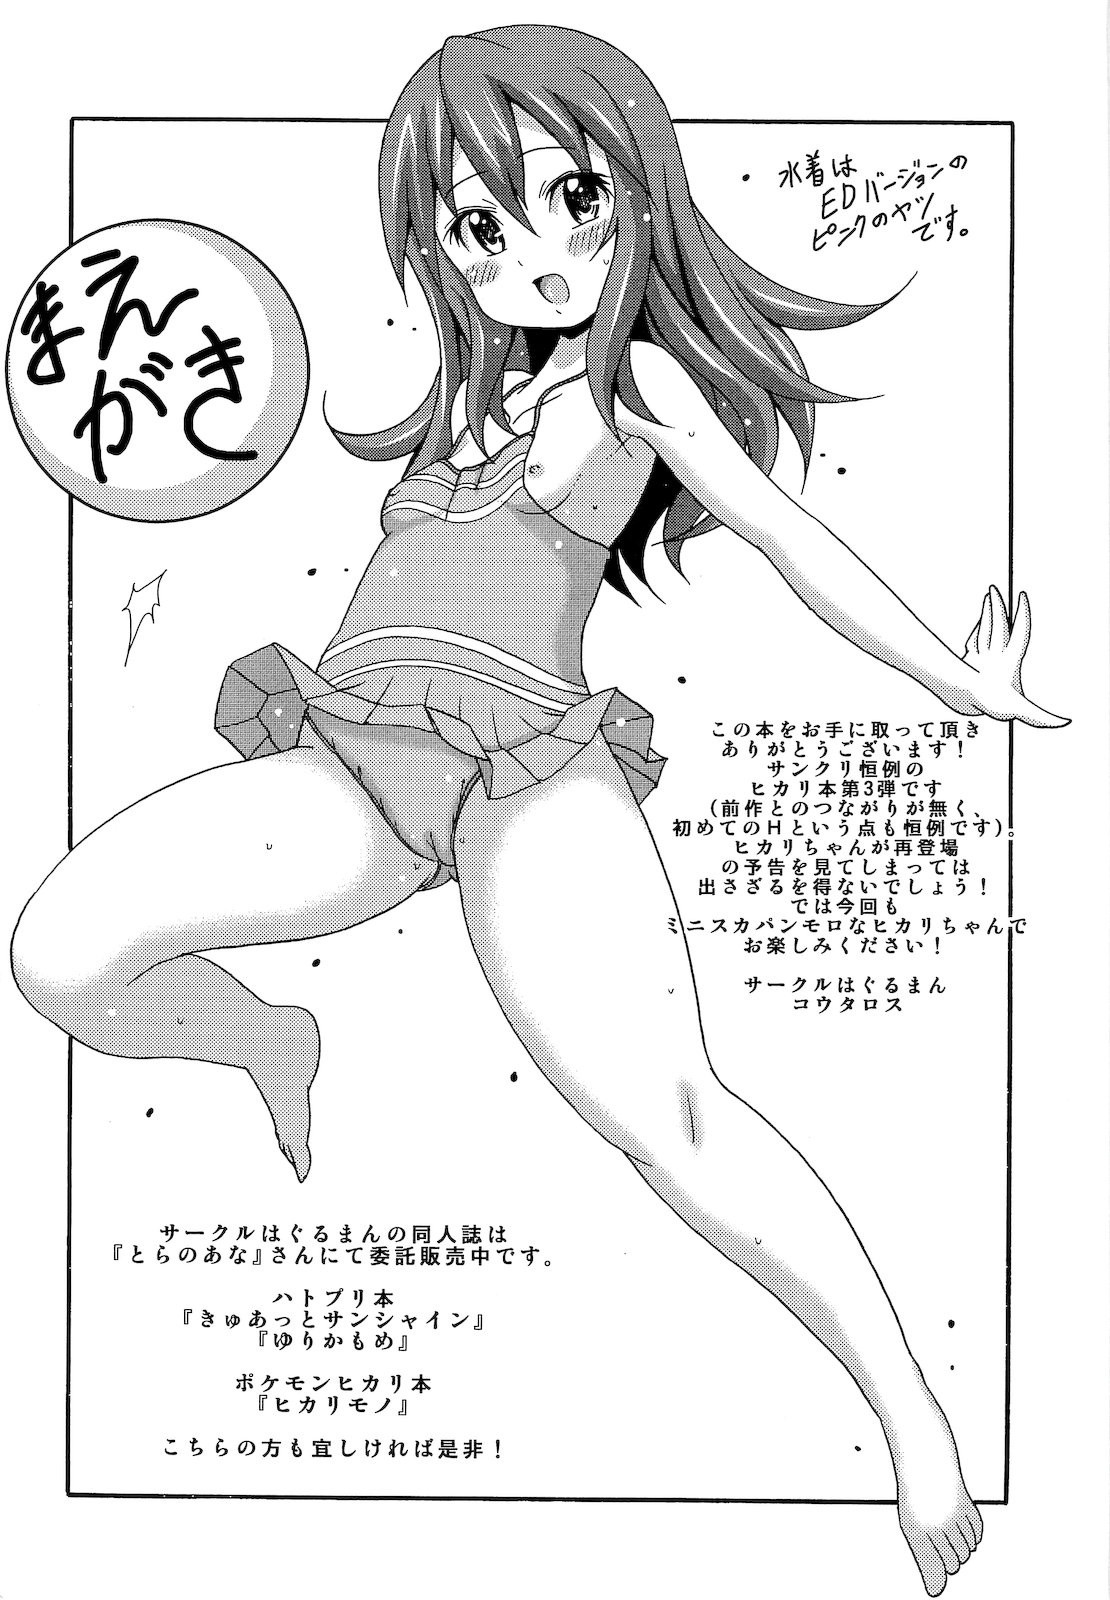 Hikarism hentai manga picture 2